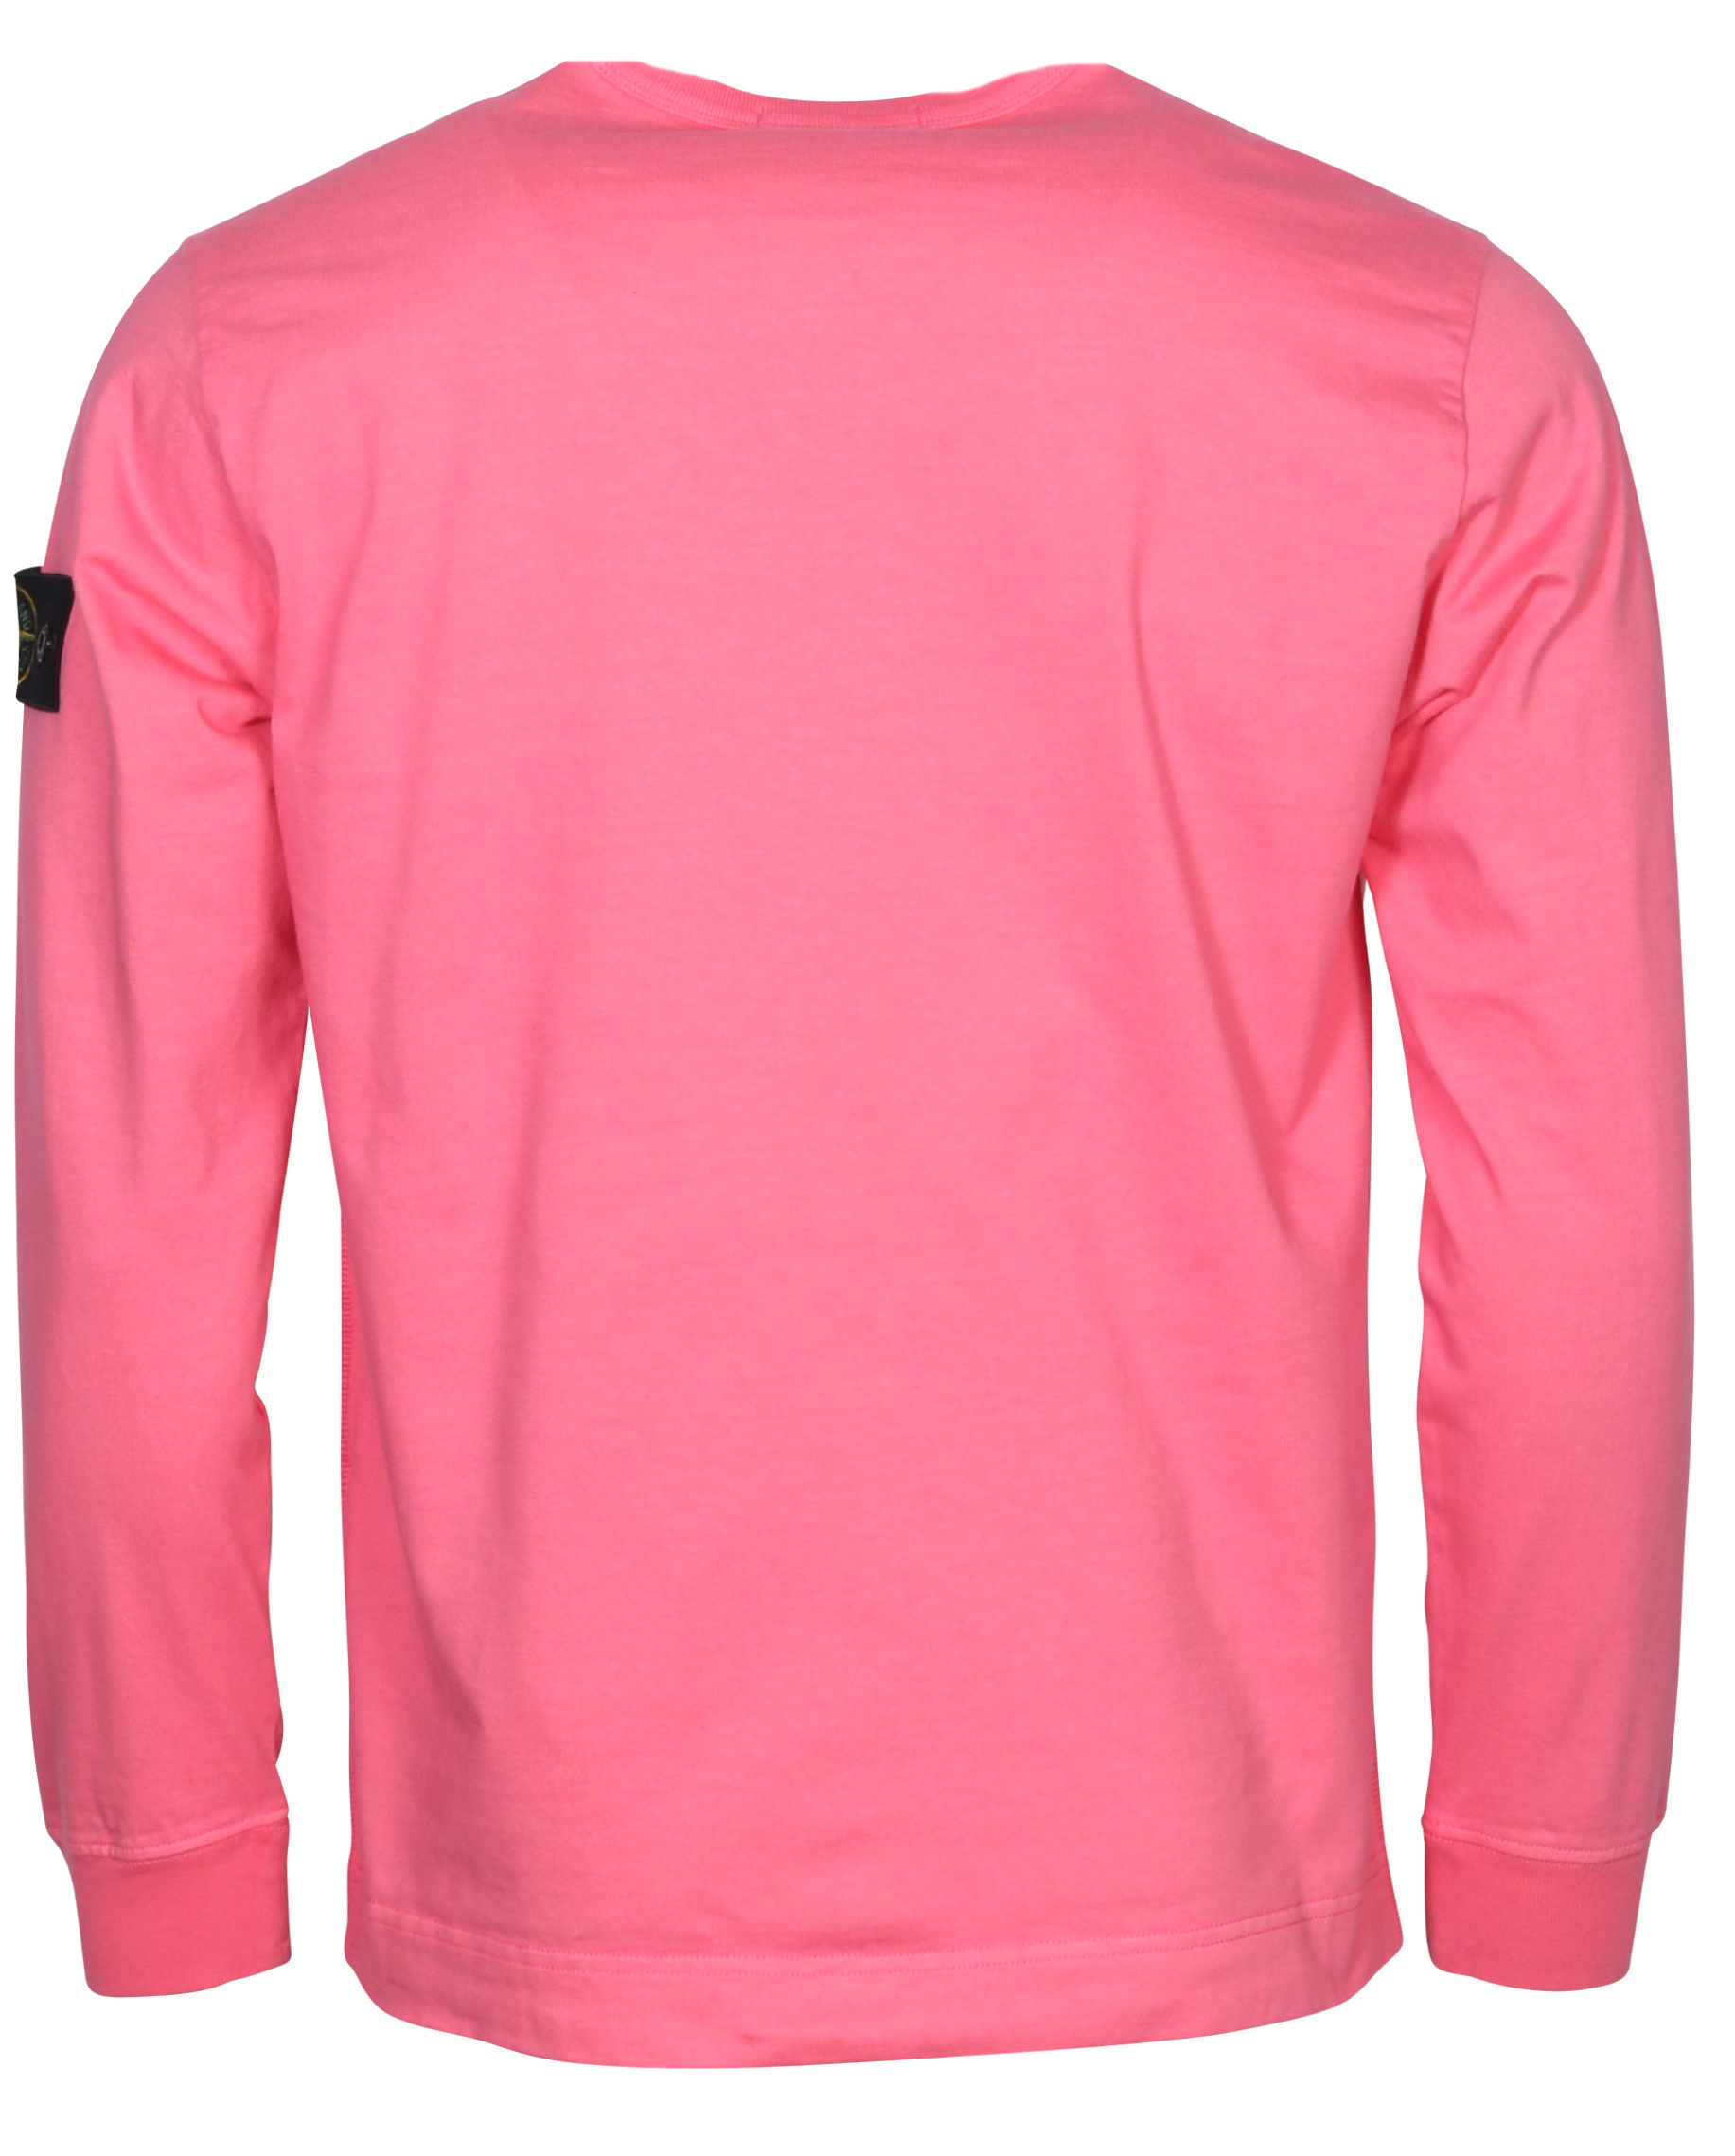 Stone Island Sweatshirt Pink